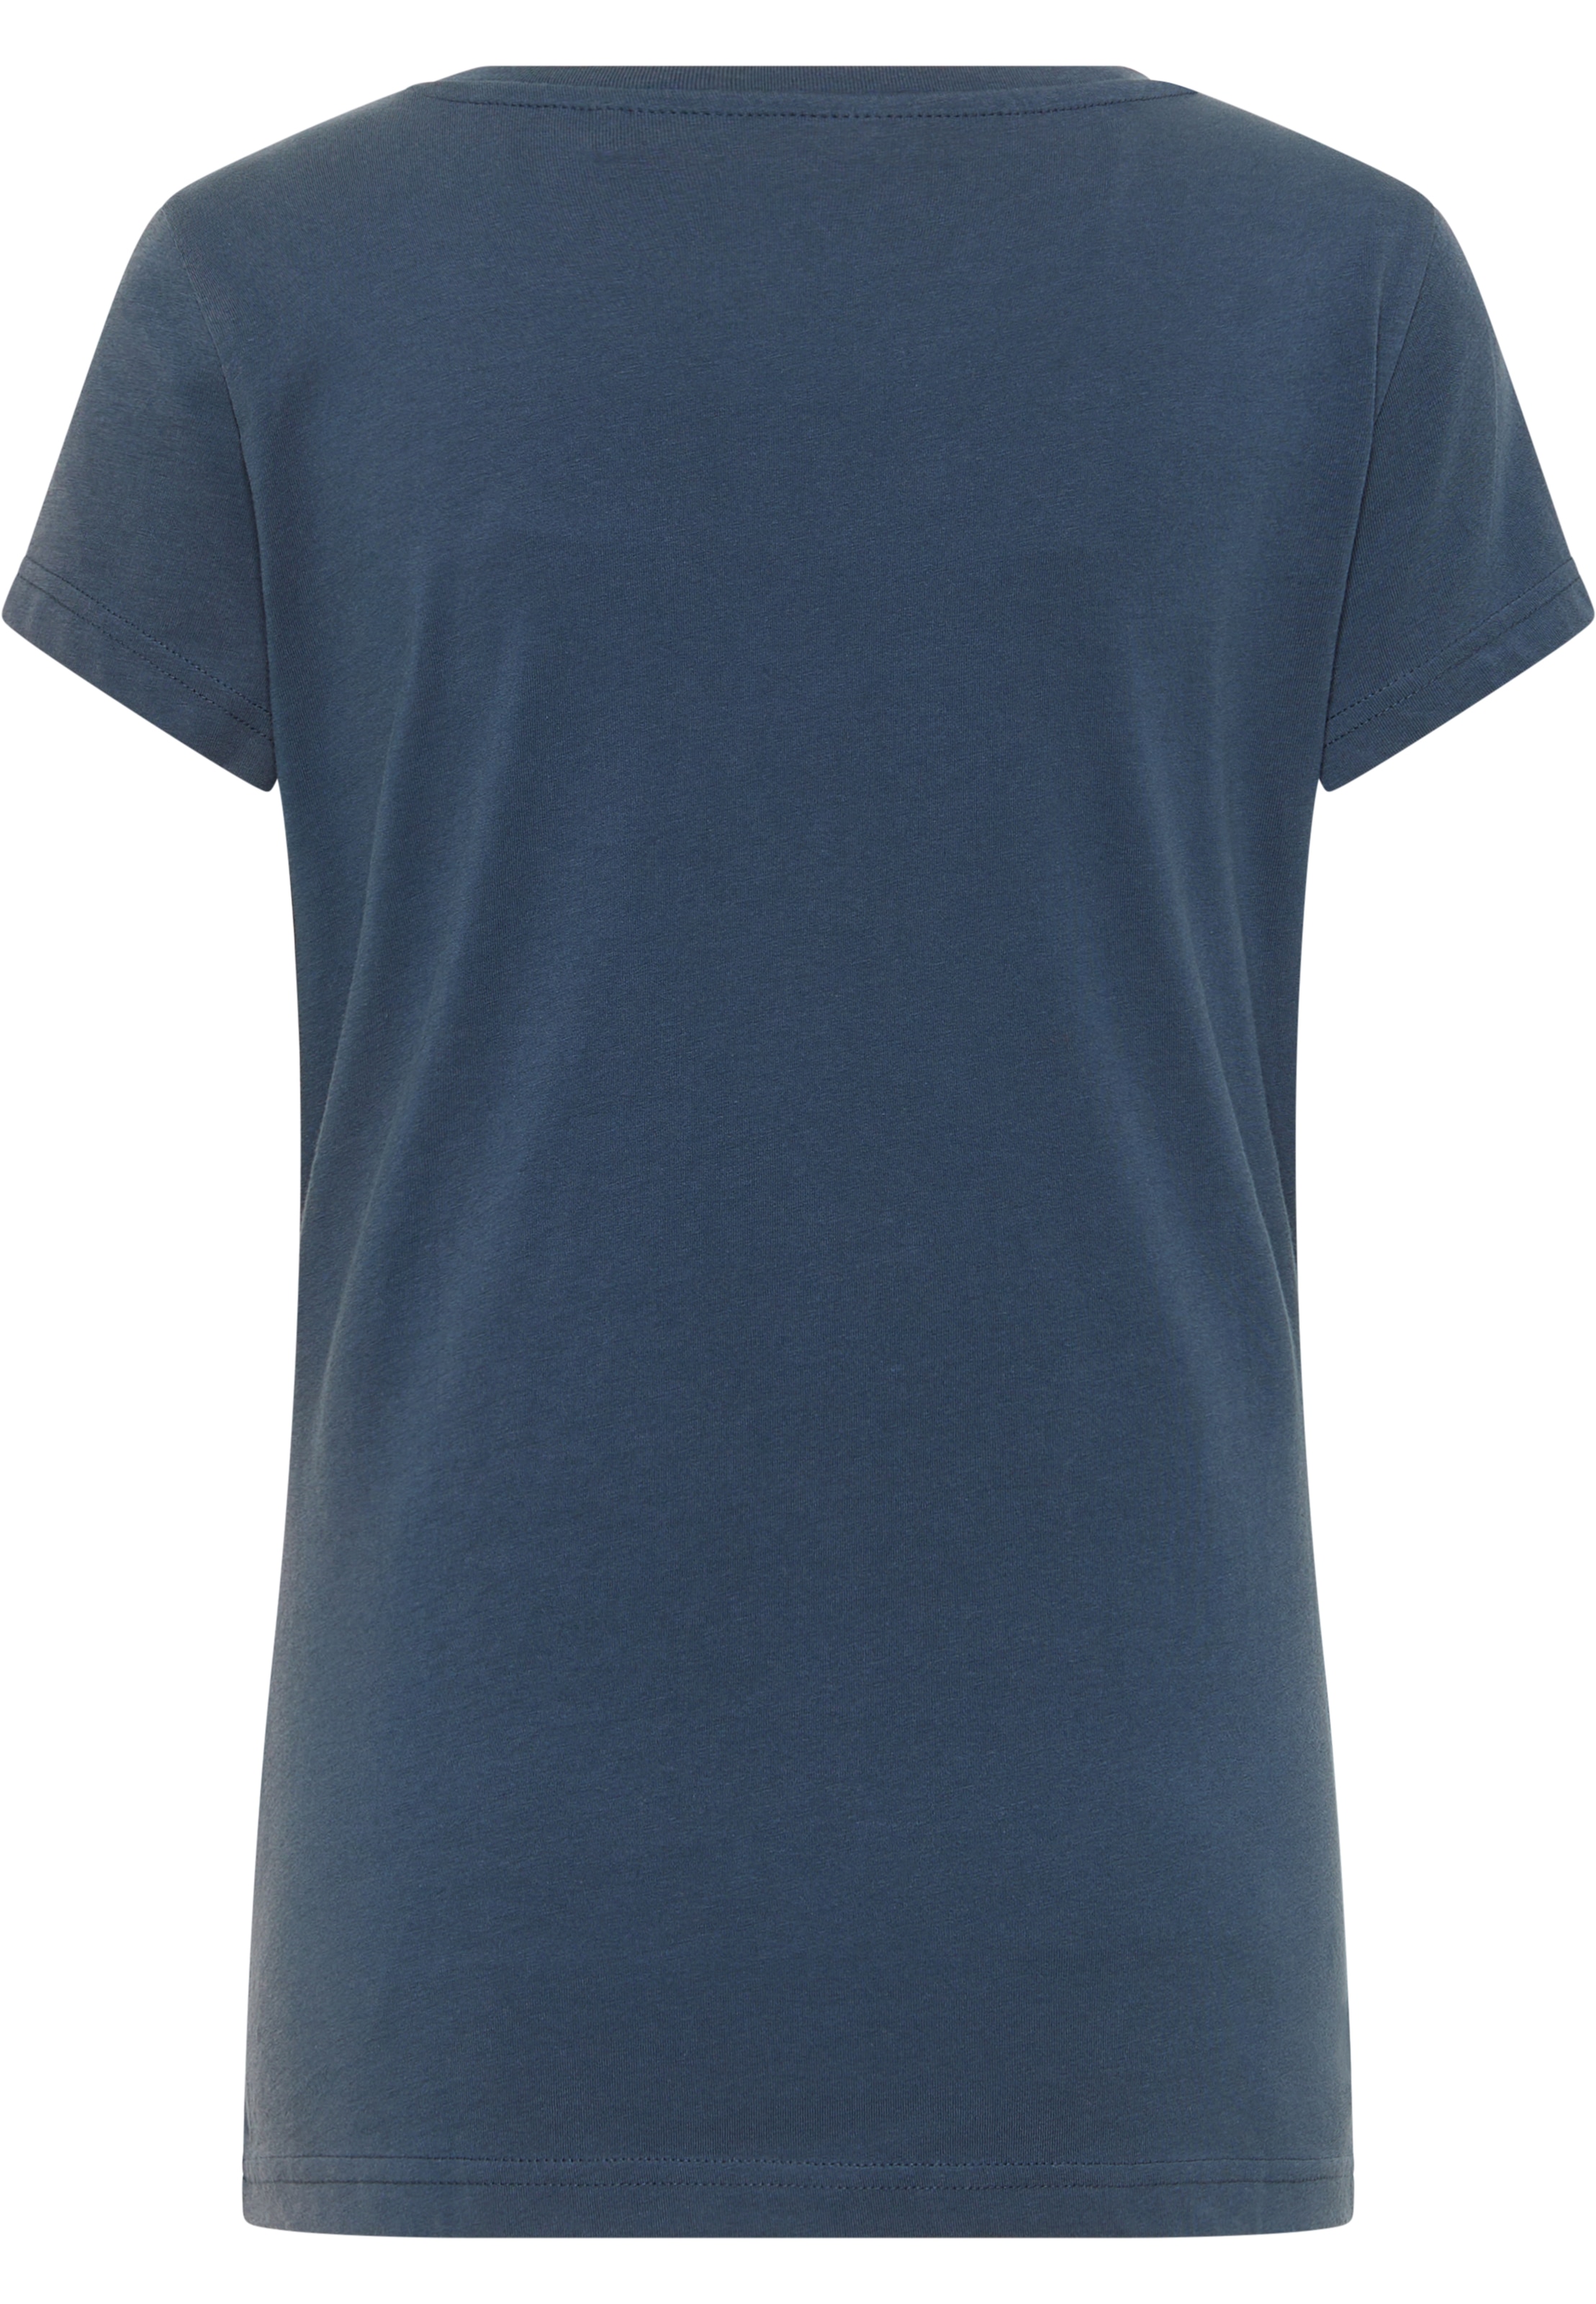 für »Style T-Shirt Print« | MUSTANG C Alexia kaufen BAUR